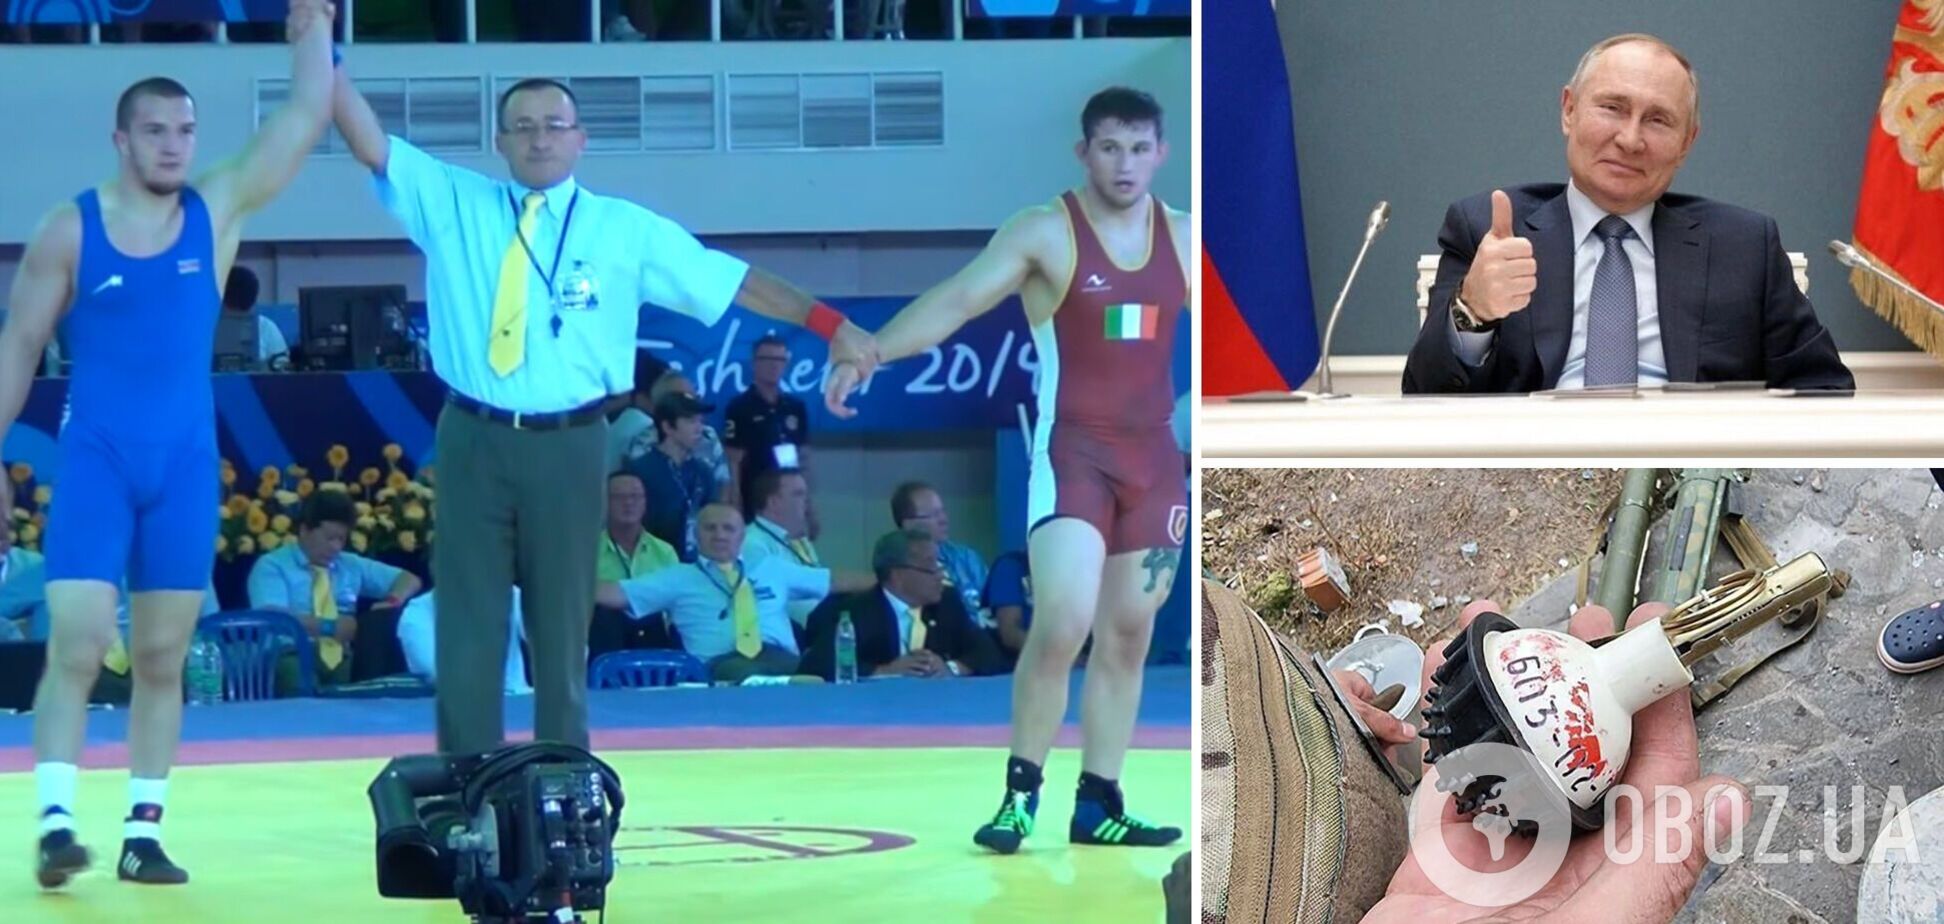 У чемпиона Азербайджана, поддержавшего войну в Украине, взорвалась в руках граната, которую дал 'поиграться ' друг в России